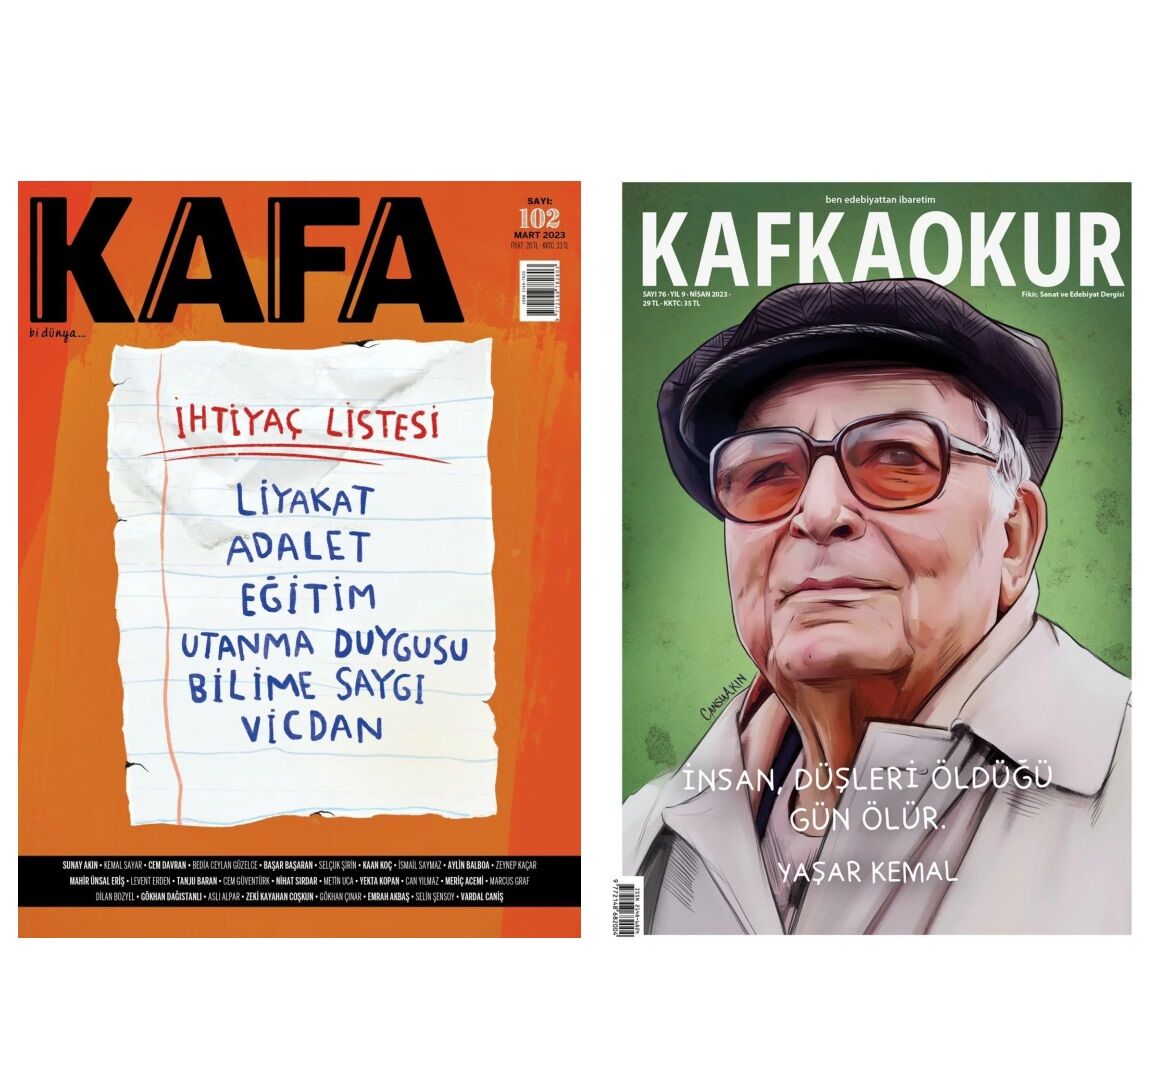 Kafa Dergi + Kafkaokur Dergi Yıllık Abonelik